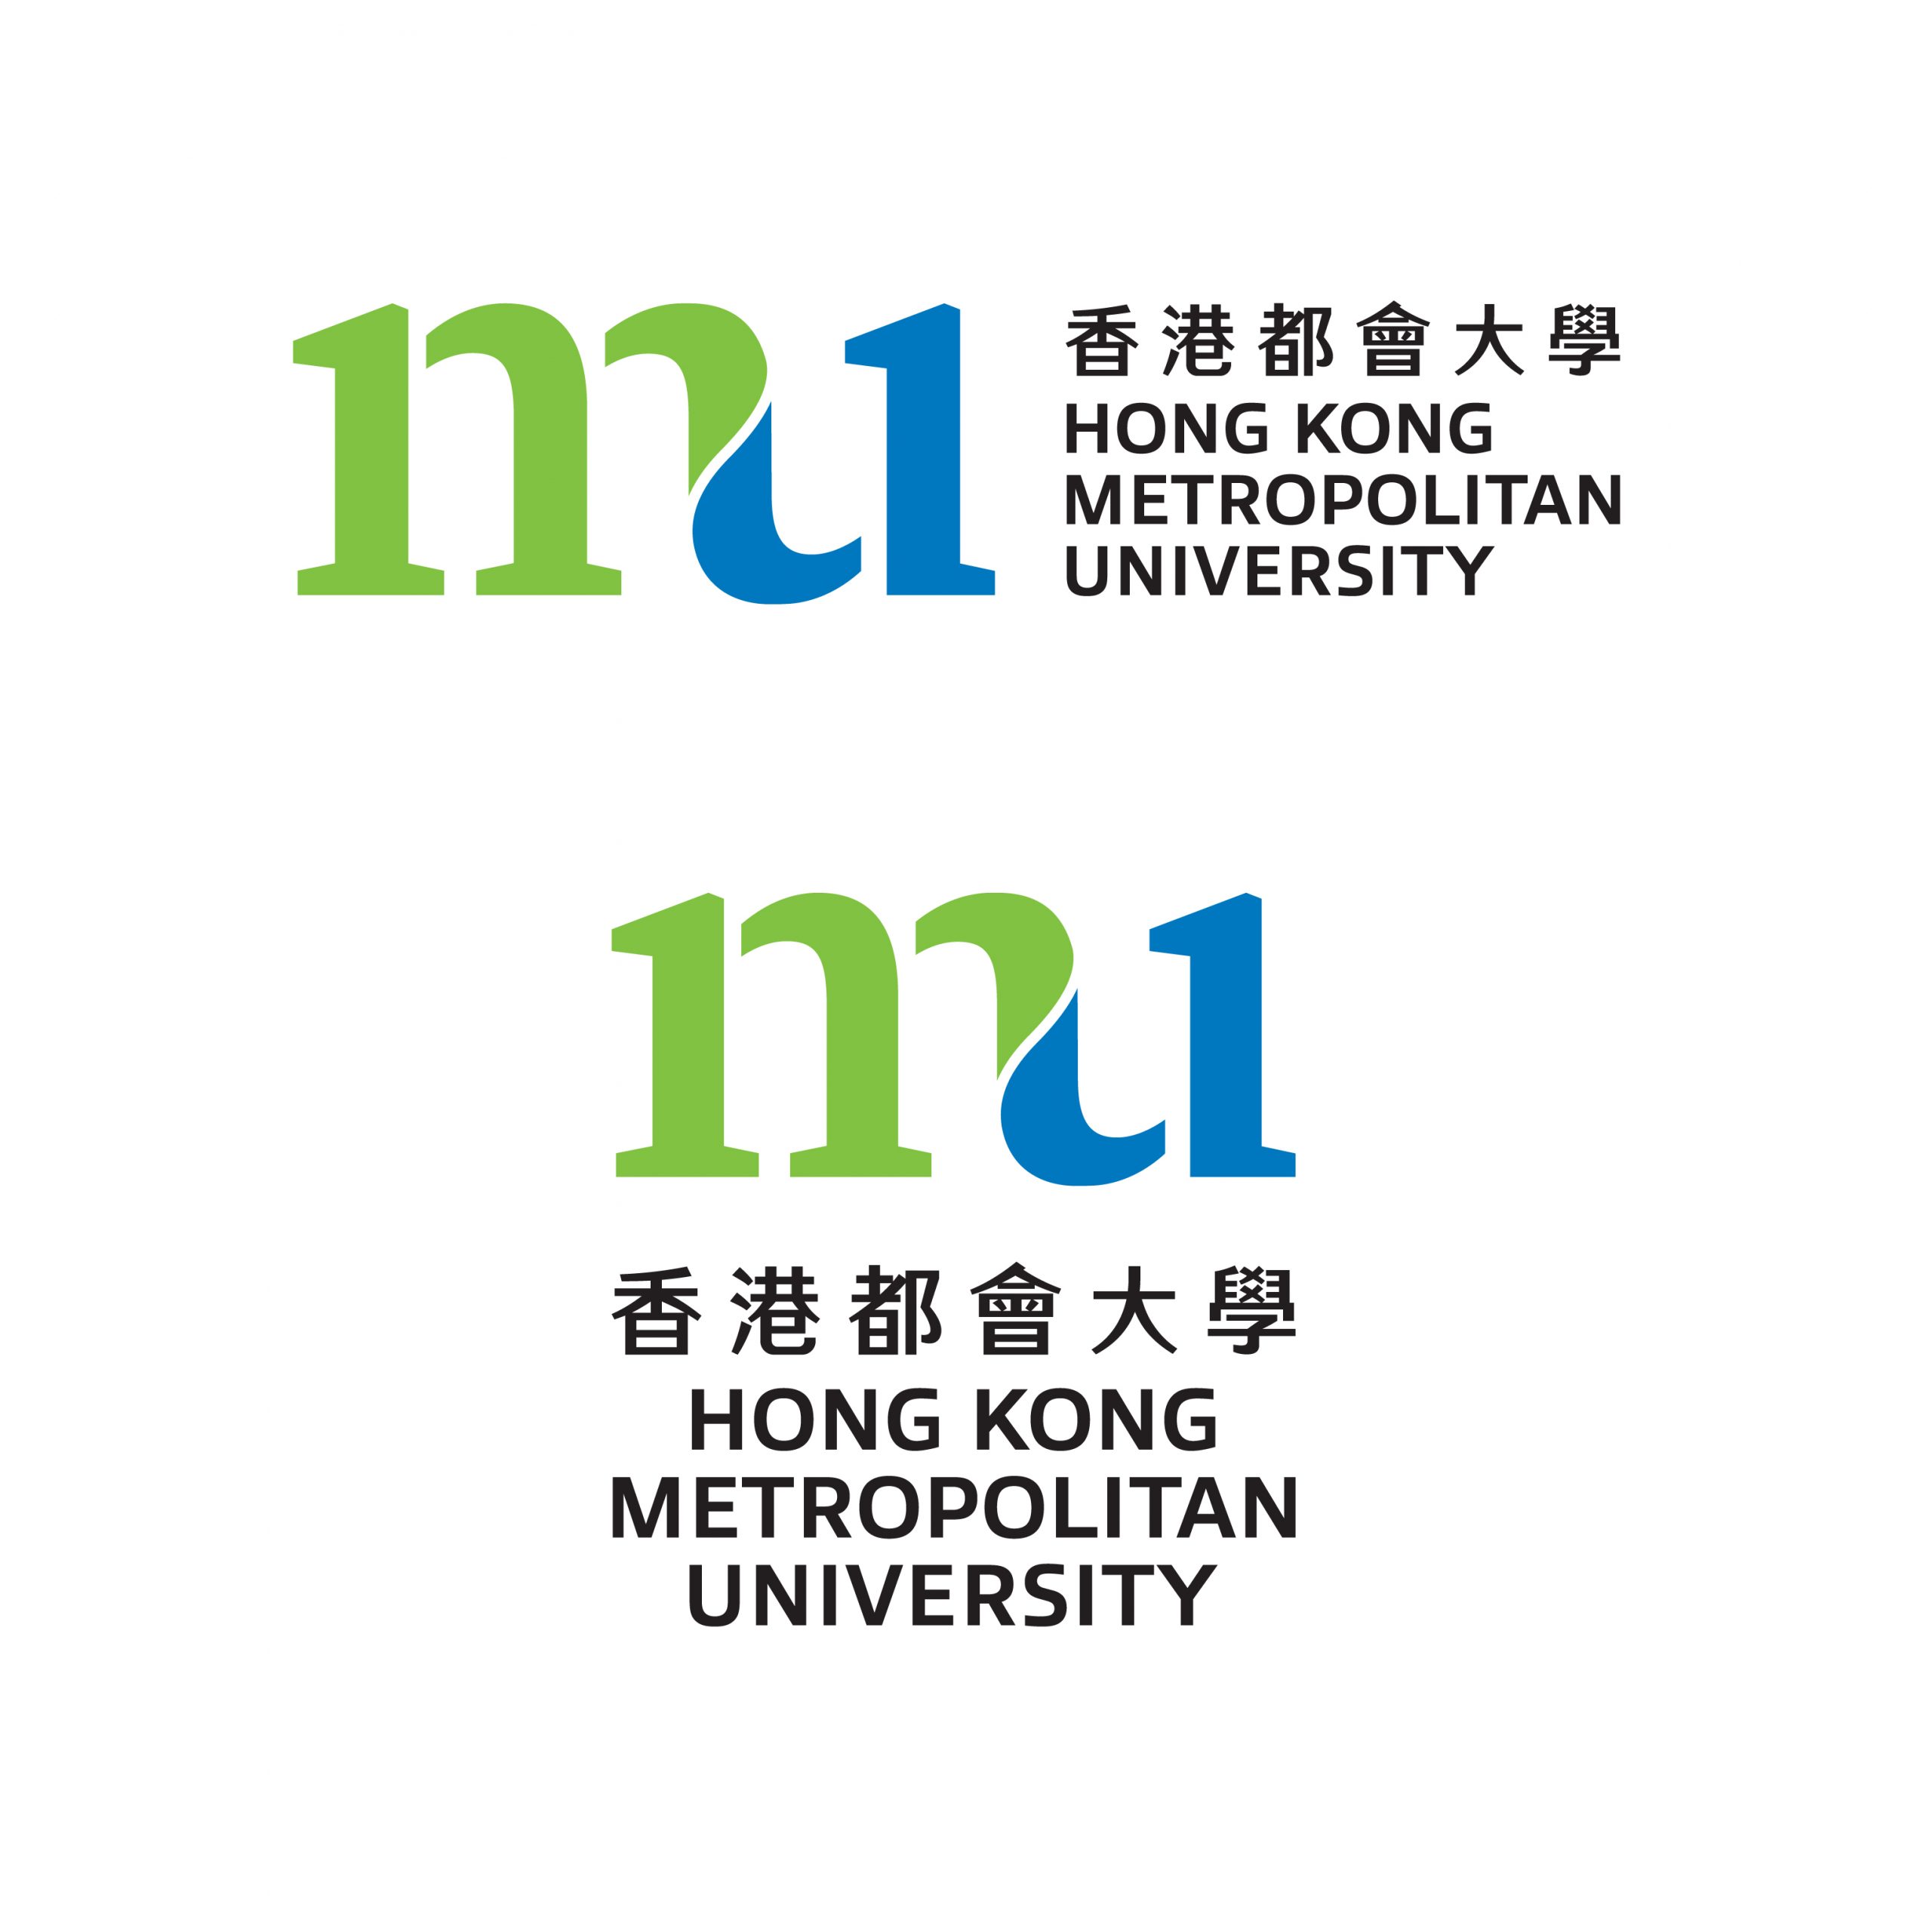 香港都会大学校徽。